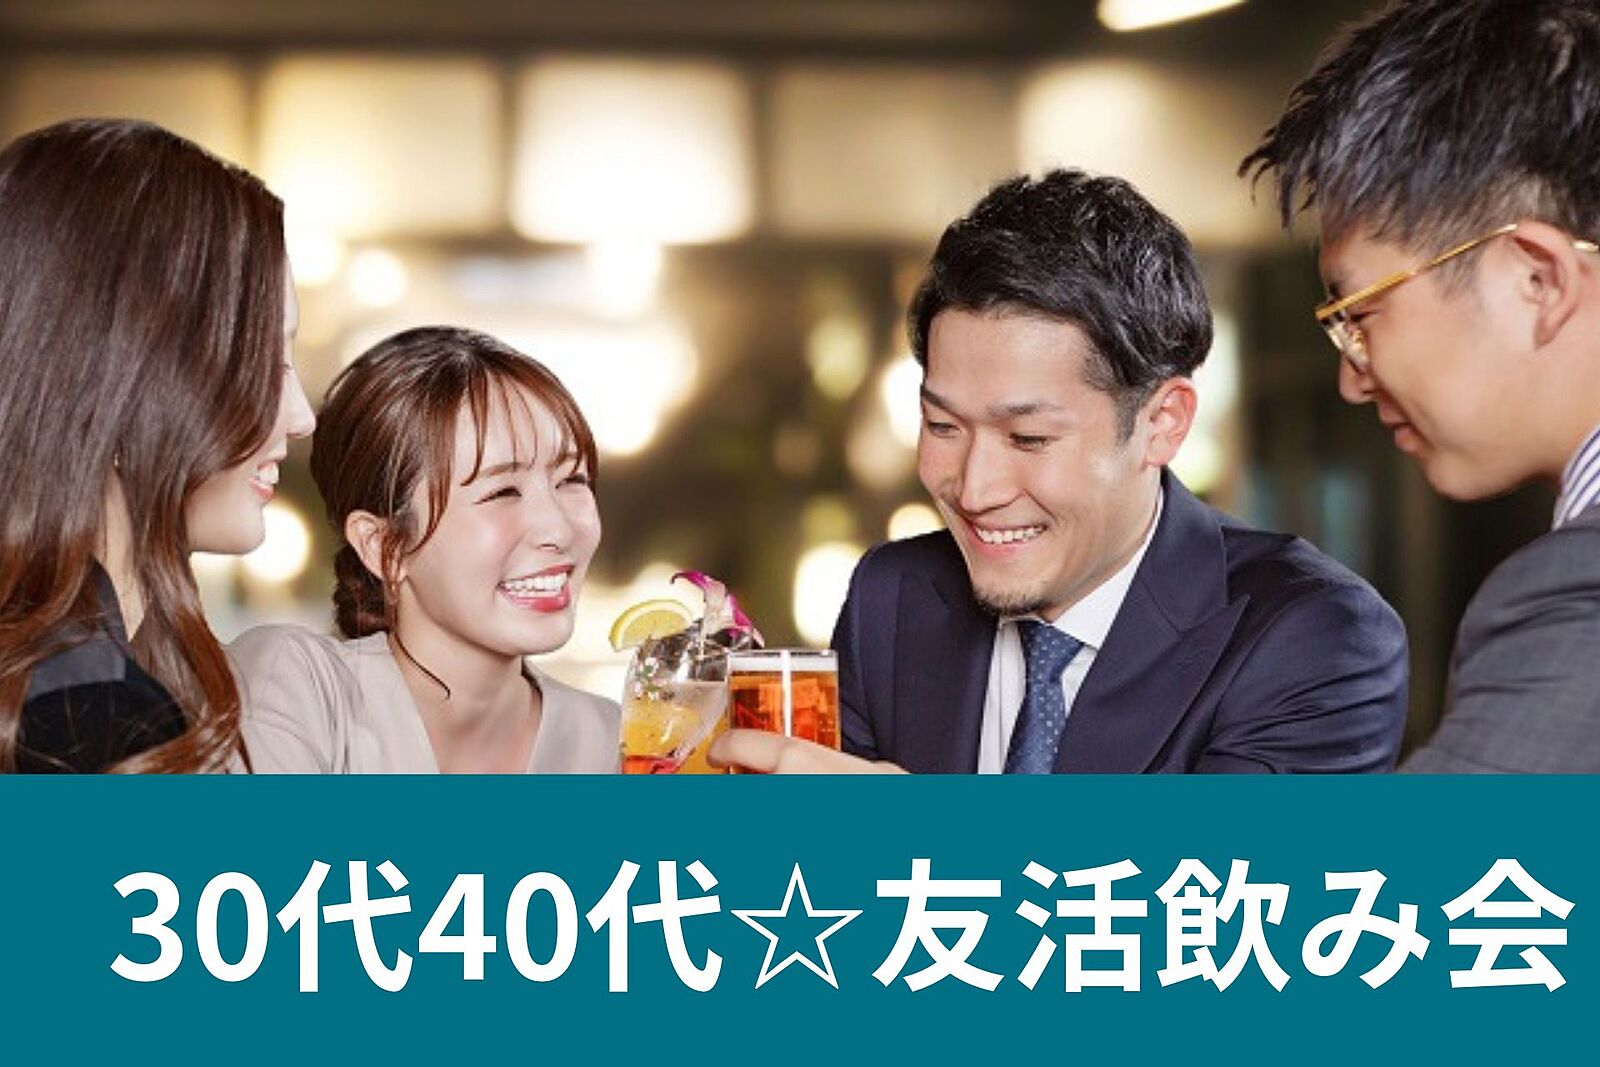 ※男性満席🌈先着5名様無料😄新宿で友達作り飲み会🍷シングル30代40代✨